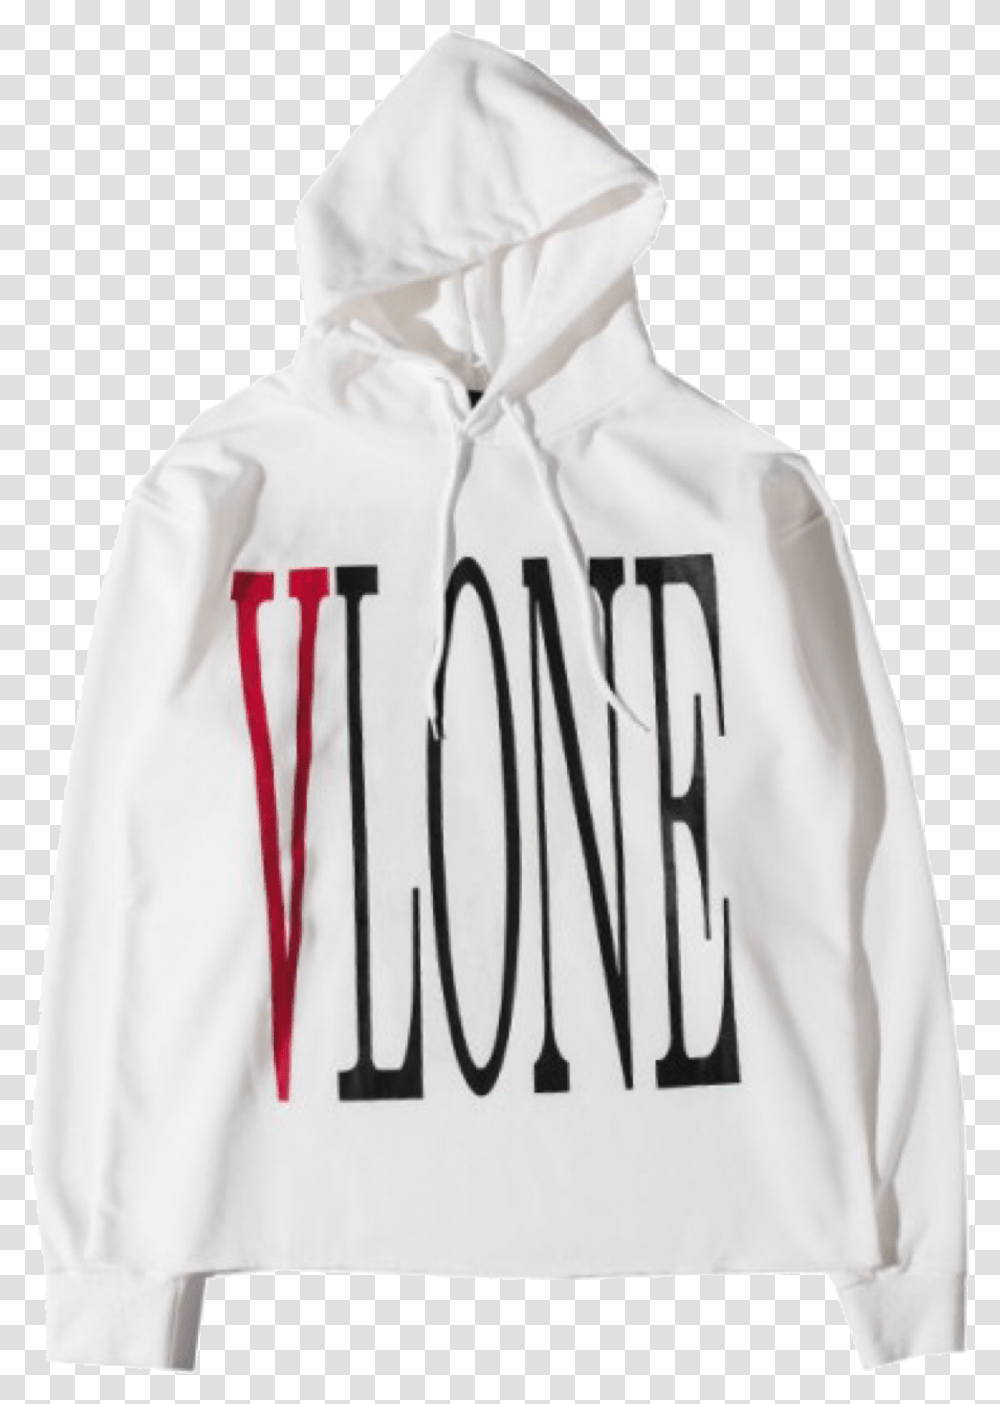 Vlone Logo Vlone White Hoodie, Apparel, Sweatshirt, Sweater Transparent Png